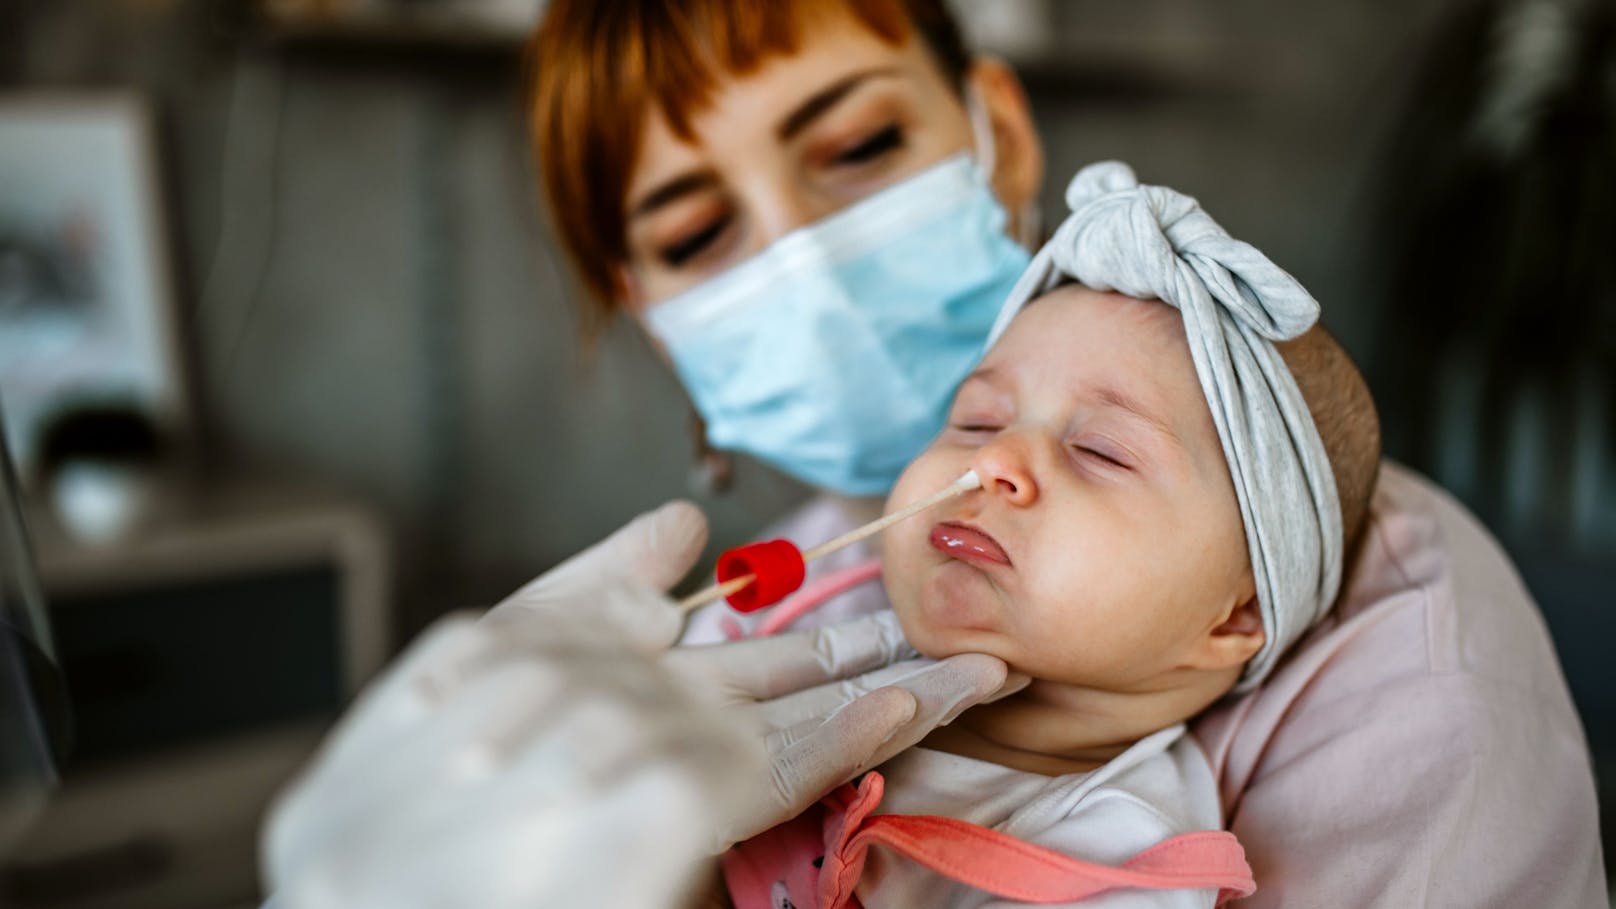 Baby verklagt Klinik wegen Nasenabstrich, will 100 €